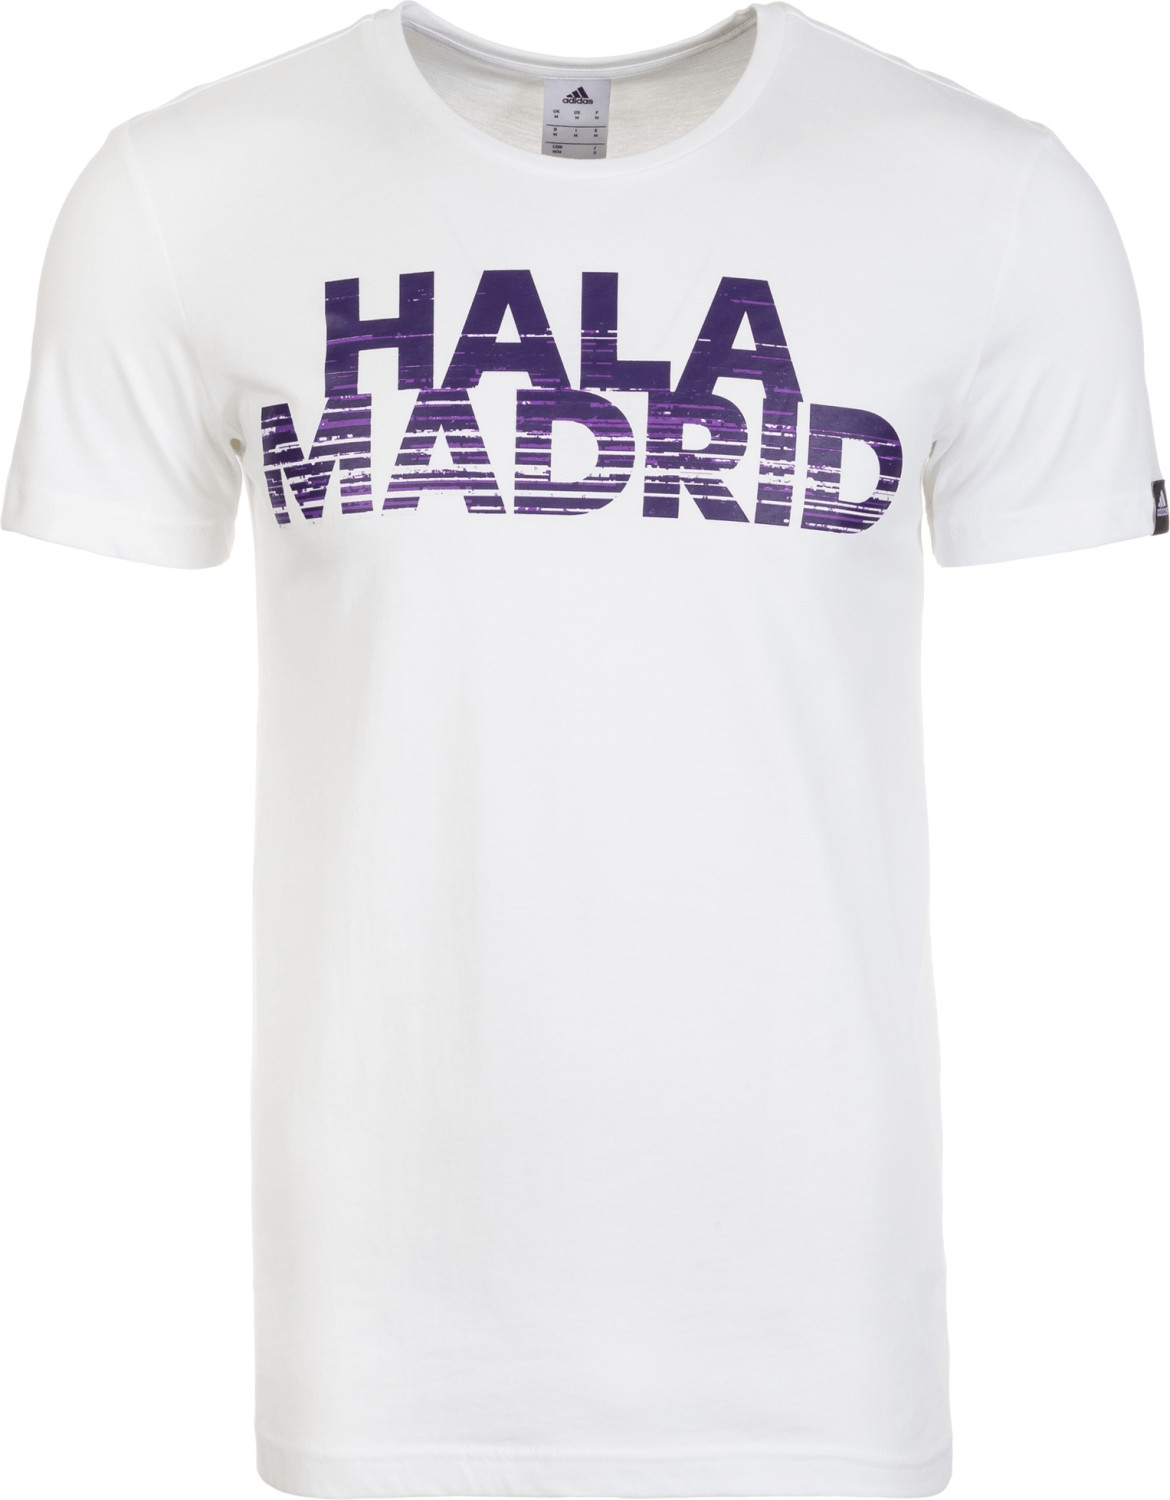 Adidas Real Madrid T-Shirt